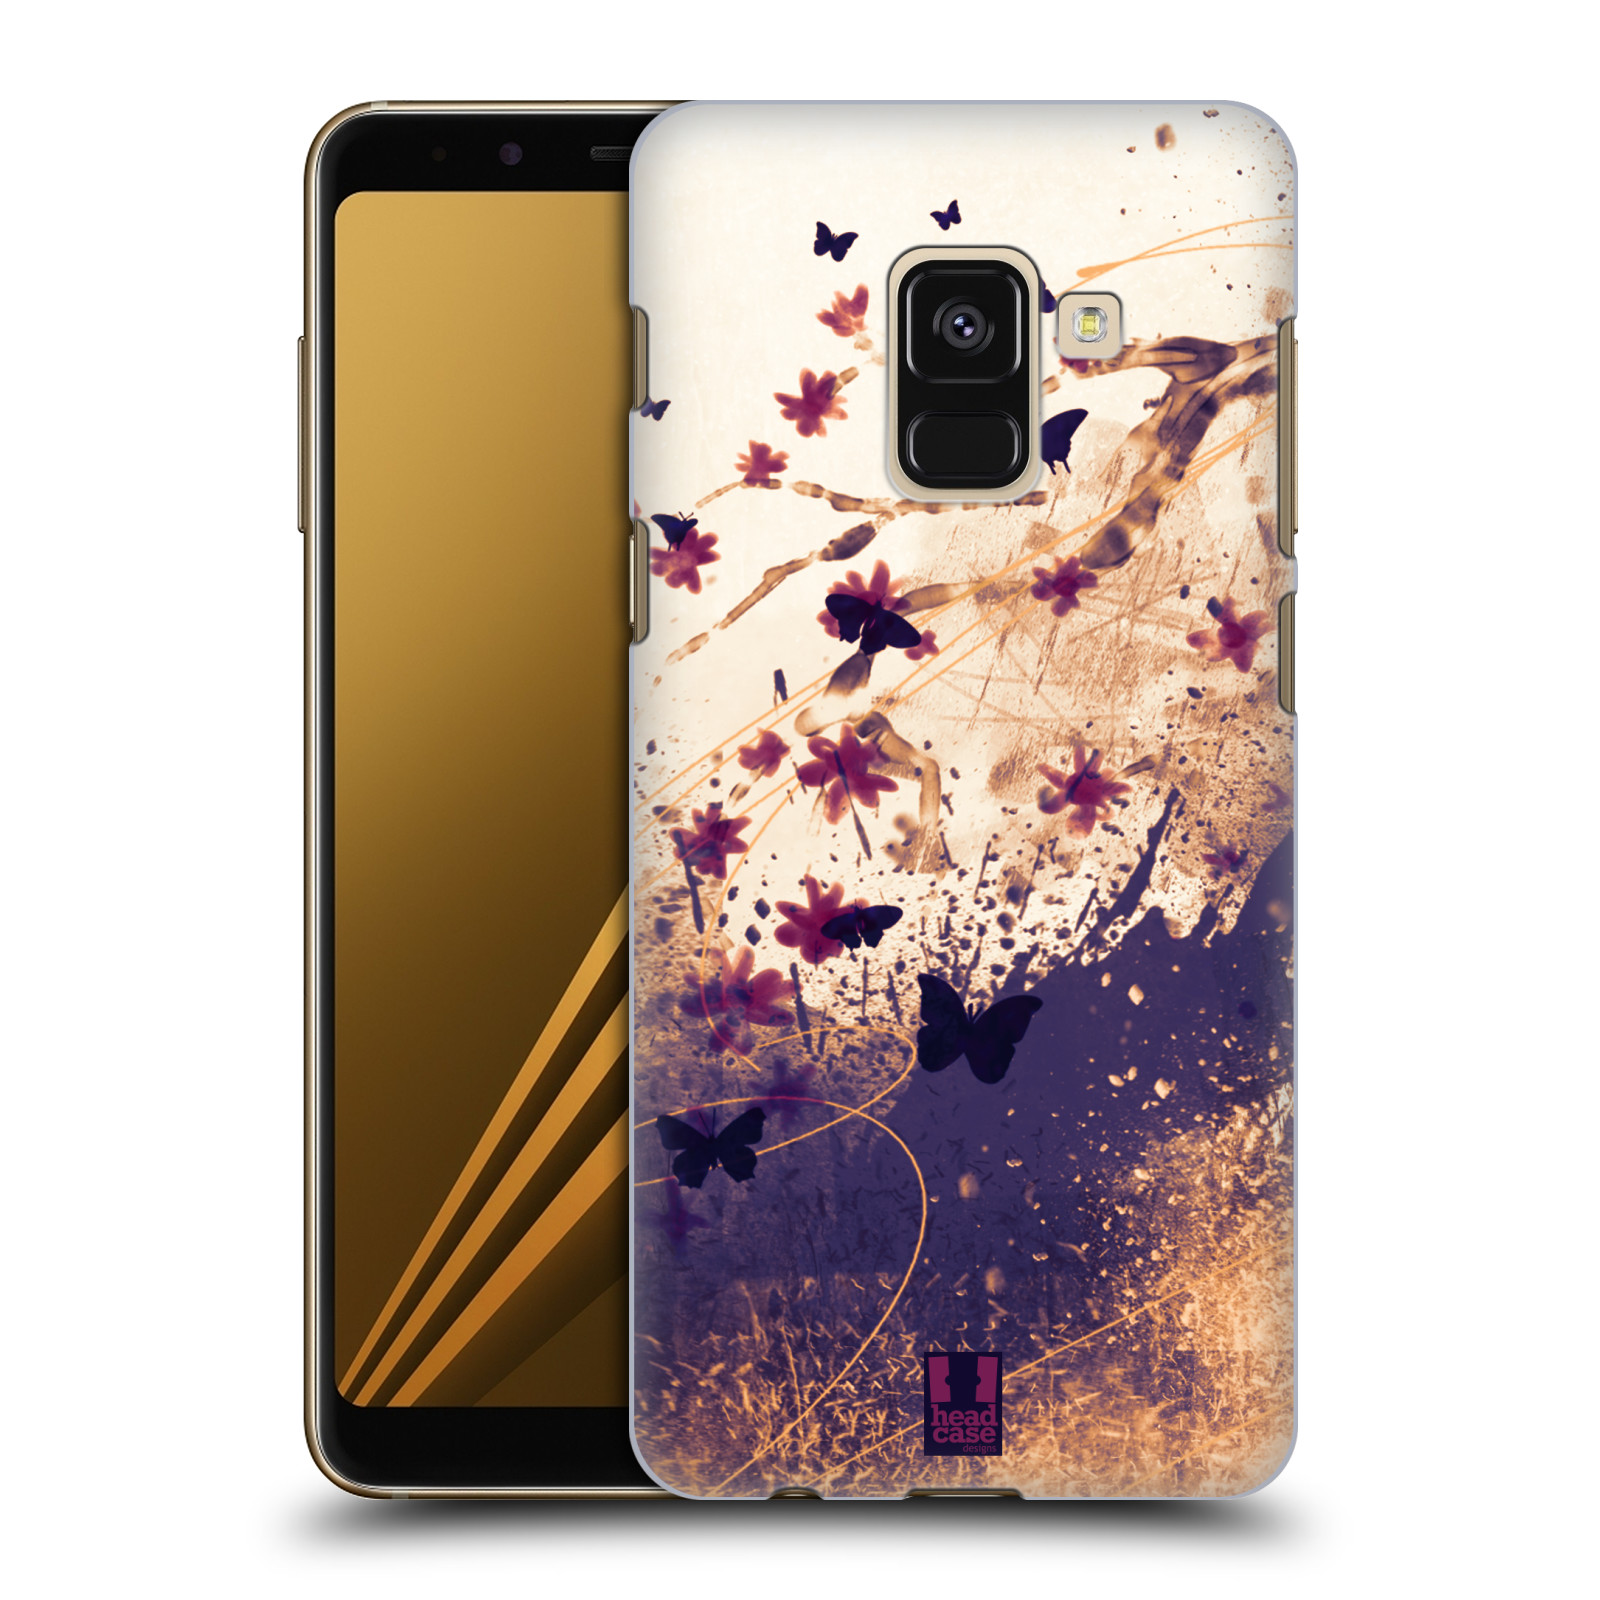 Zadní obal pro mobil Samsung Galaxy A8+ - HEAD CASE - Barevné květy a motýlci